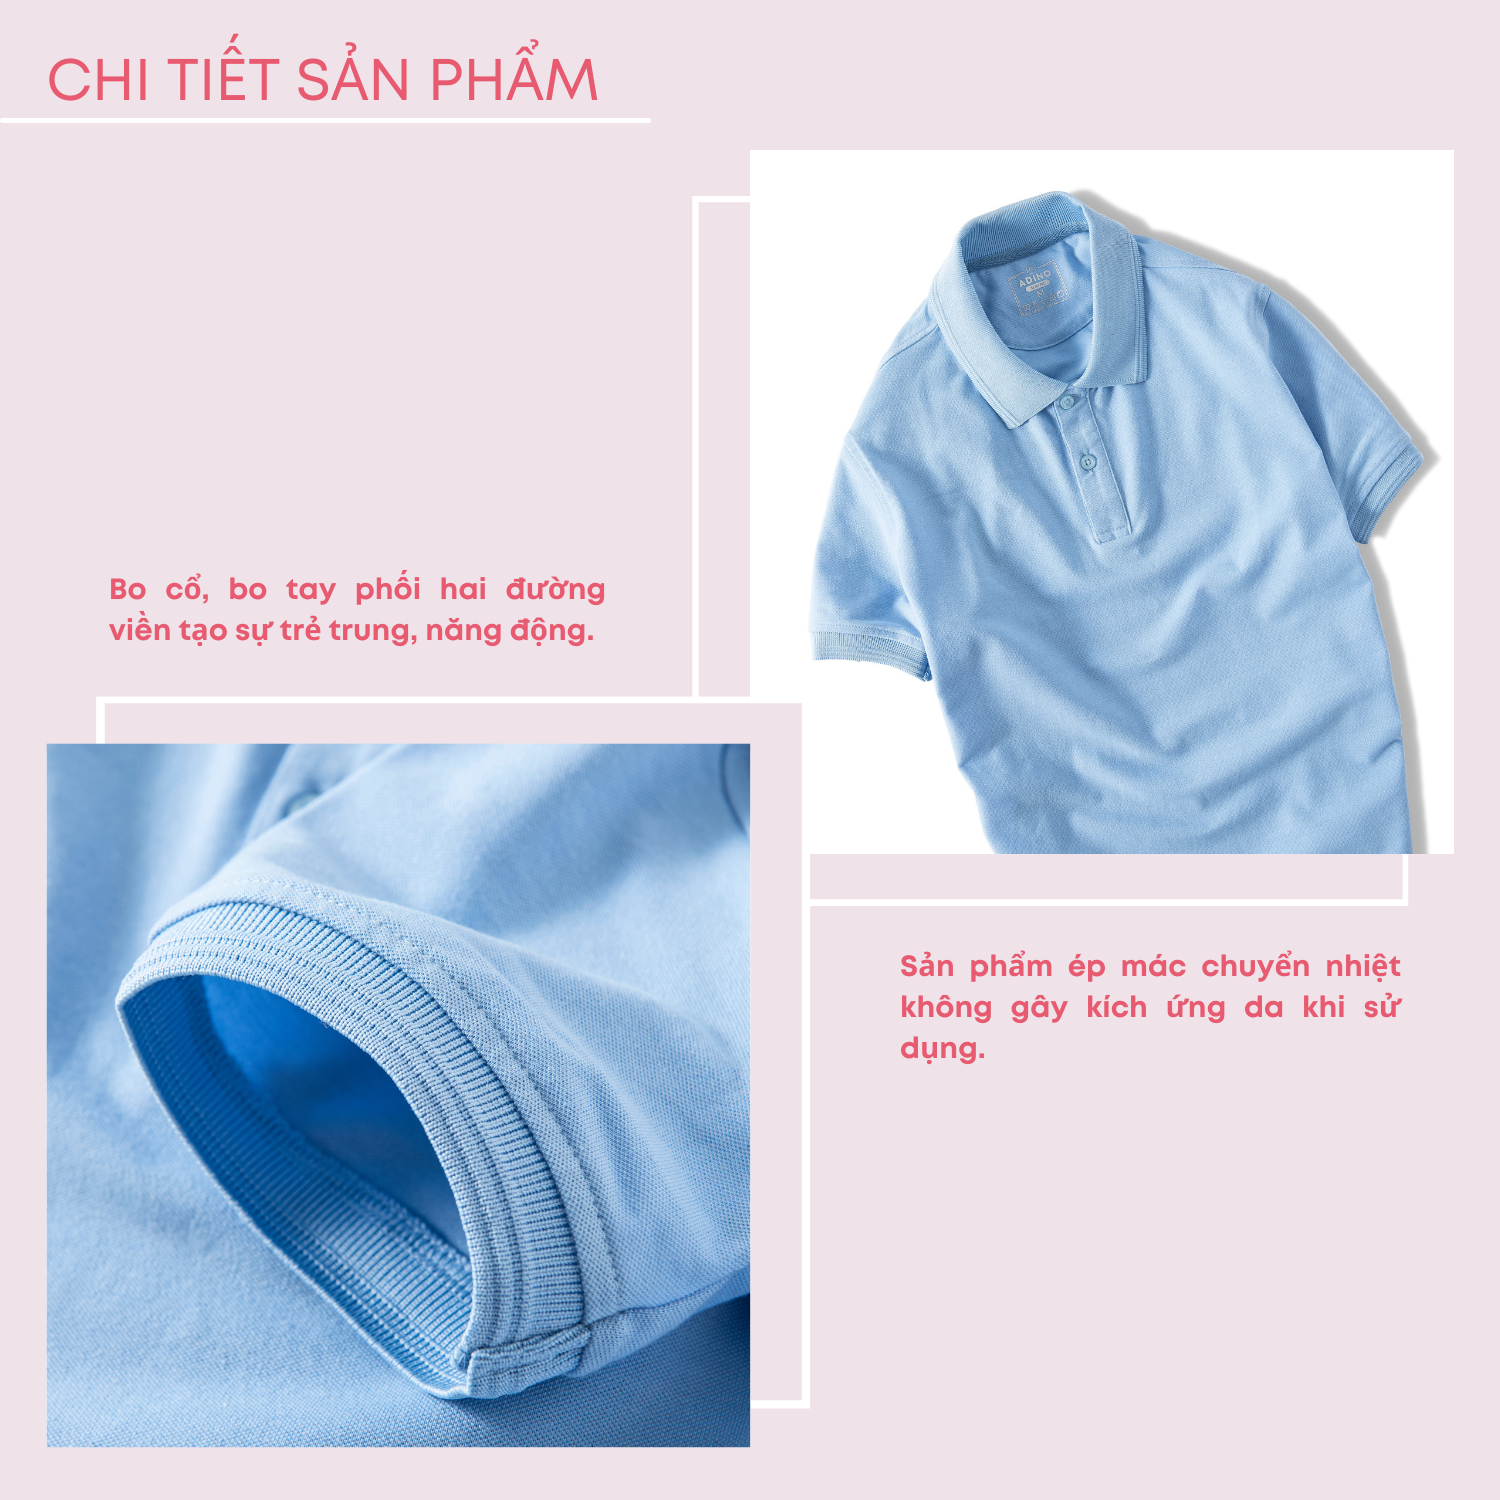 Hình ảnh Áo polo nữ màu xanh biển nhạt phối viền chìm ADINO vải cotton polyester mềm dáng slimfit công sở hơi ôm trẻ trung APN03